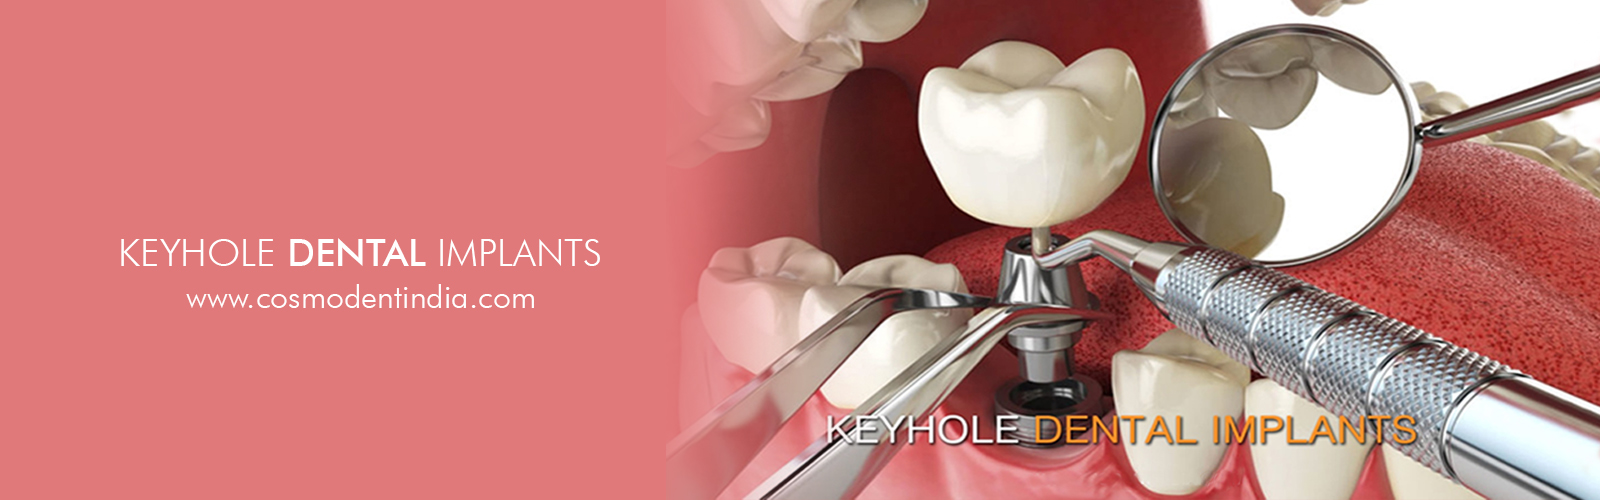 buraco da fechadura-implantes dentários